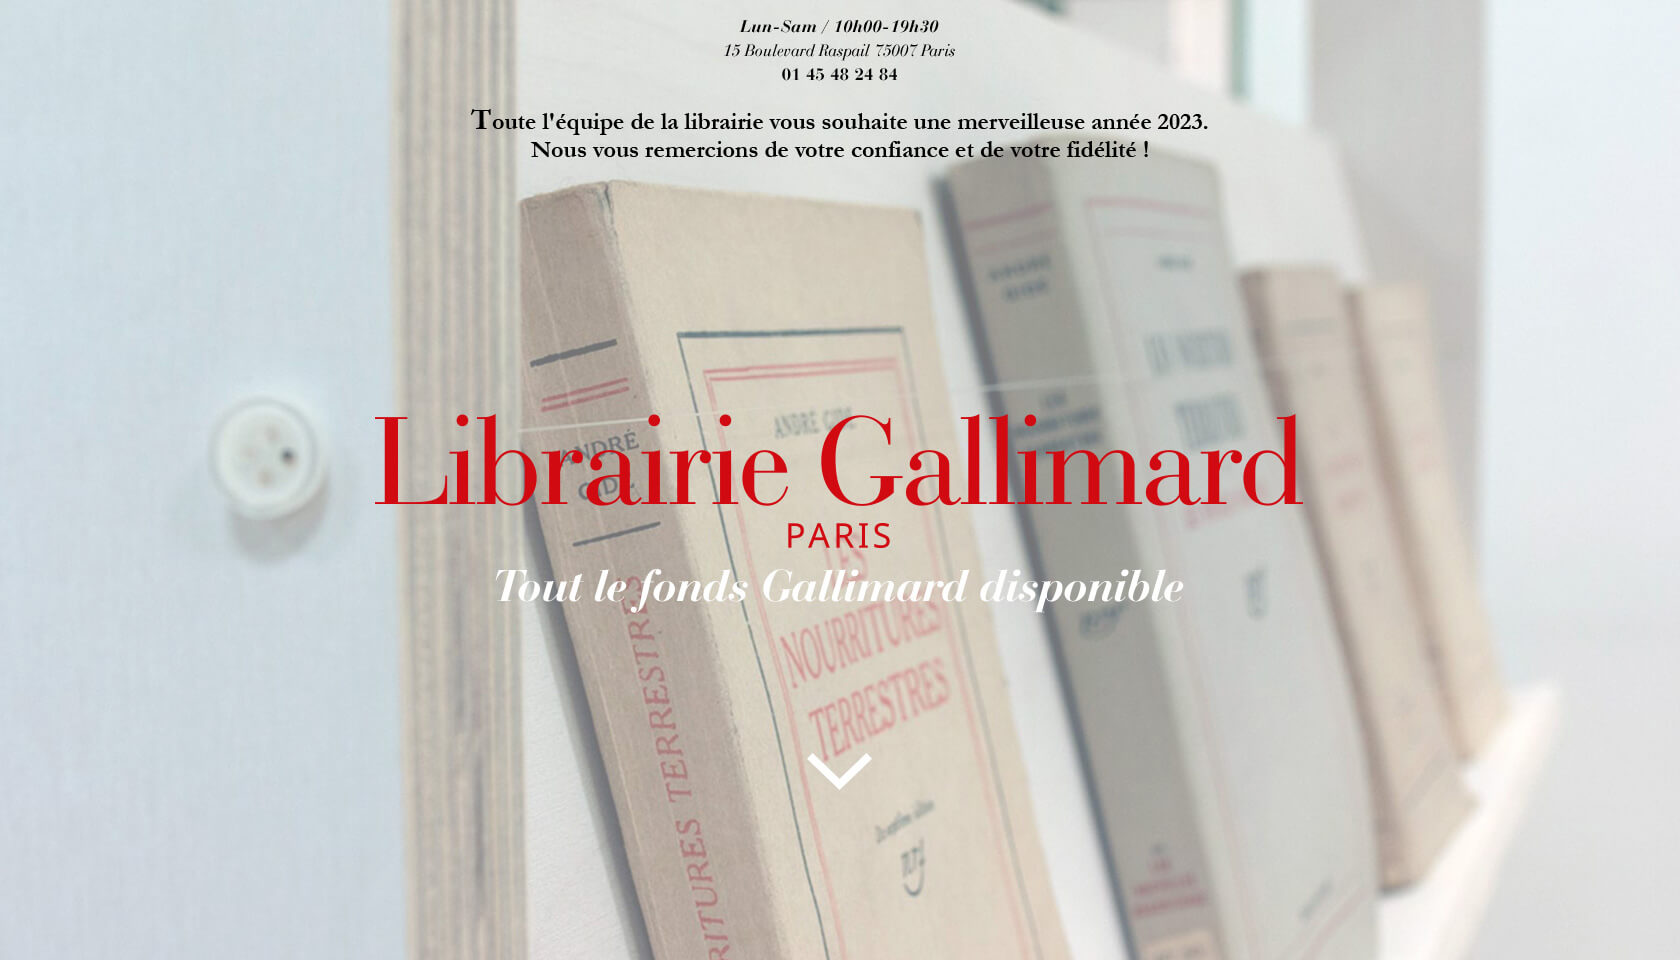 Librairie Gallimard, Tout le fonds disponible